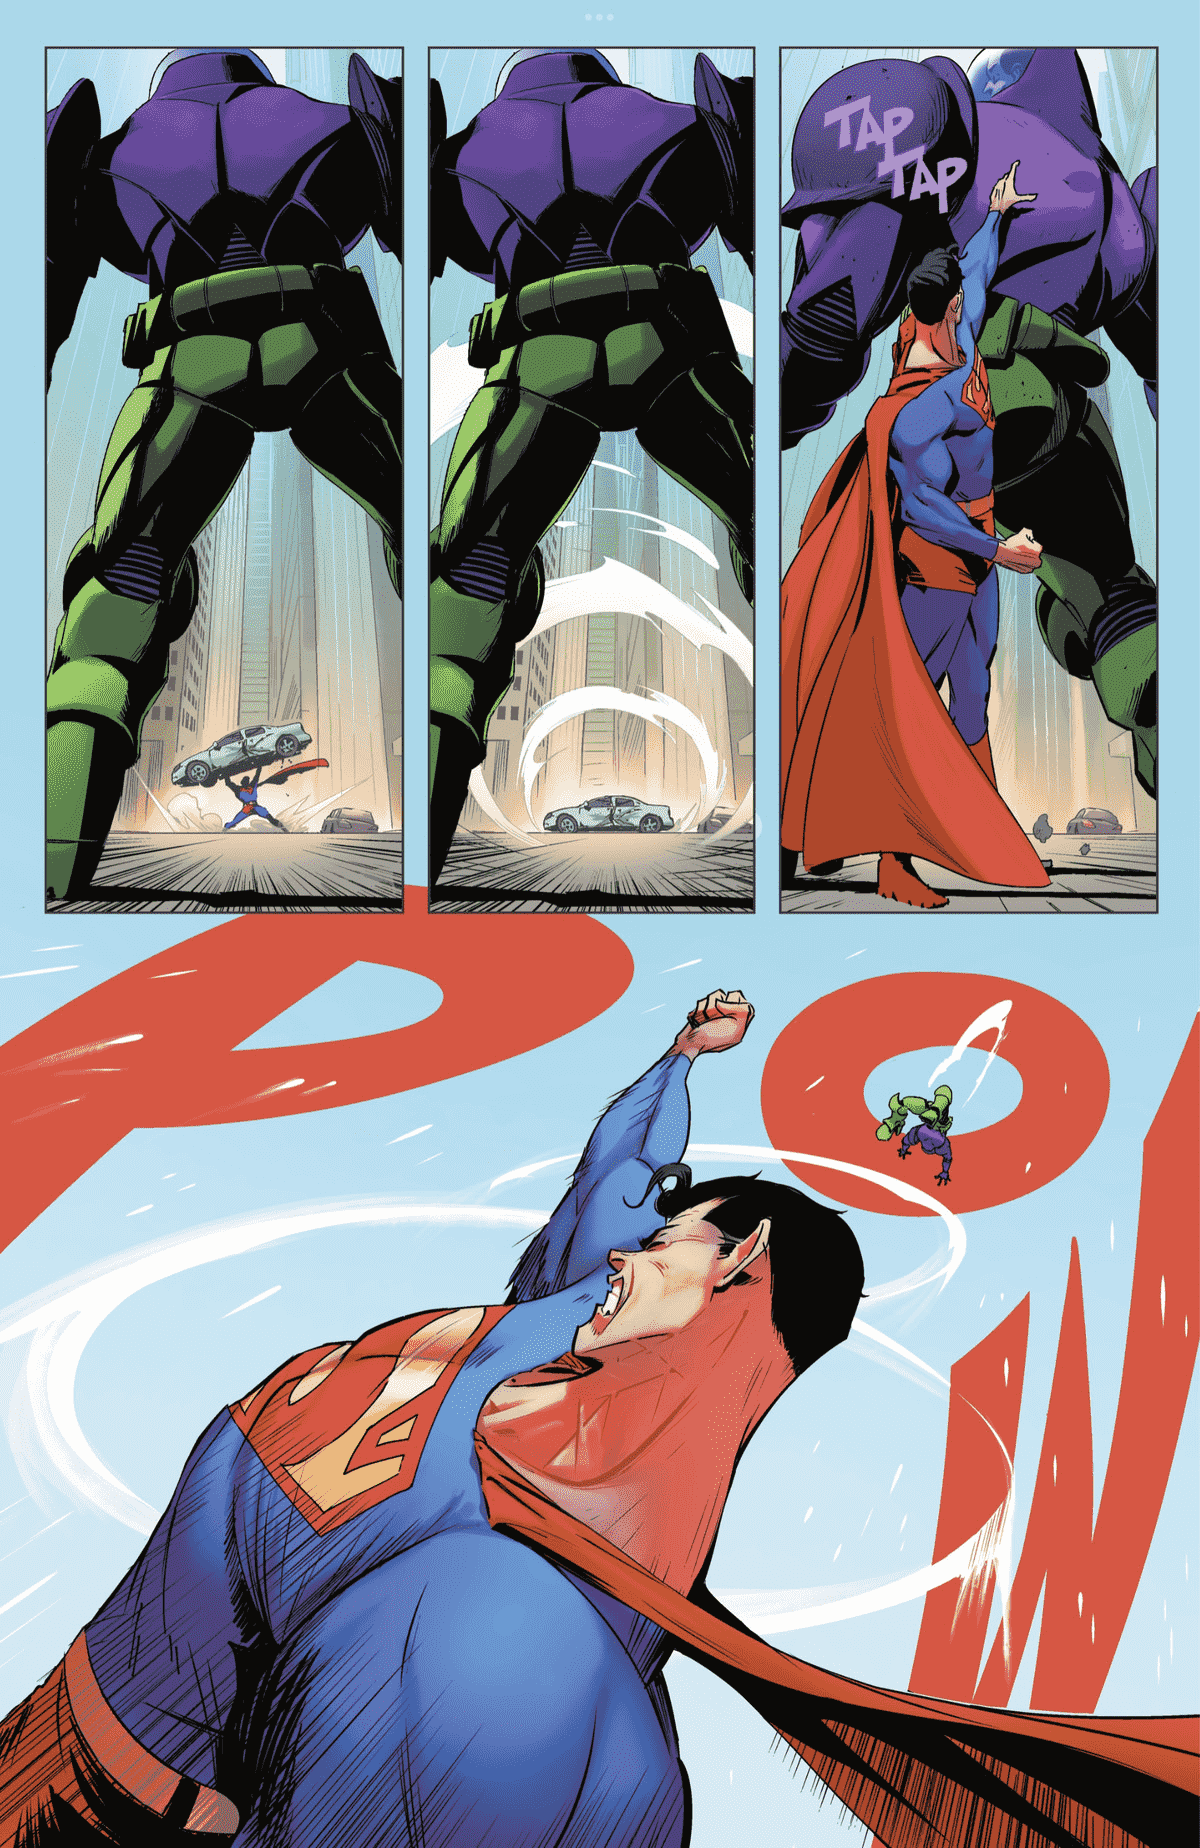 Vues rapprochées du dos de Lex Luthor alors que, de loin et encadré entre ses jambes, Superman attrape une voiture en l'air, puis disparaît dans une séquence de vitesse, puis tape Luthor dans le dos.  Dans le dernier panneau de la page, un énorme prisonnier de guerre apparaît autour de Superman, dont le coup de poing vient de jeter Luthor au loin dans Action Comics # 1050. 